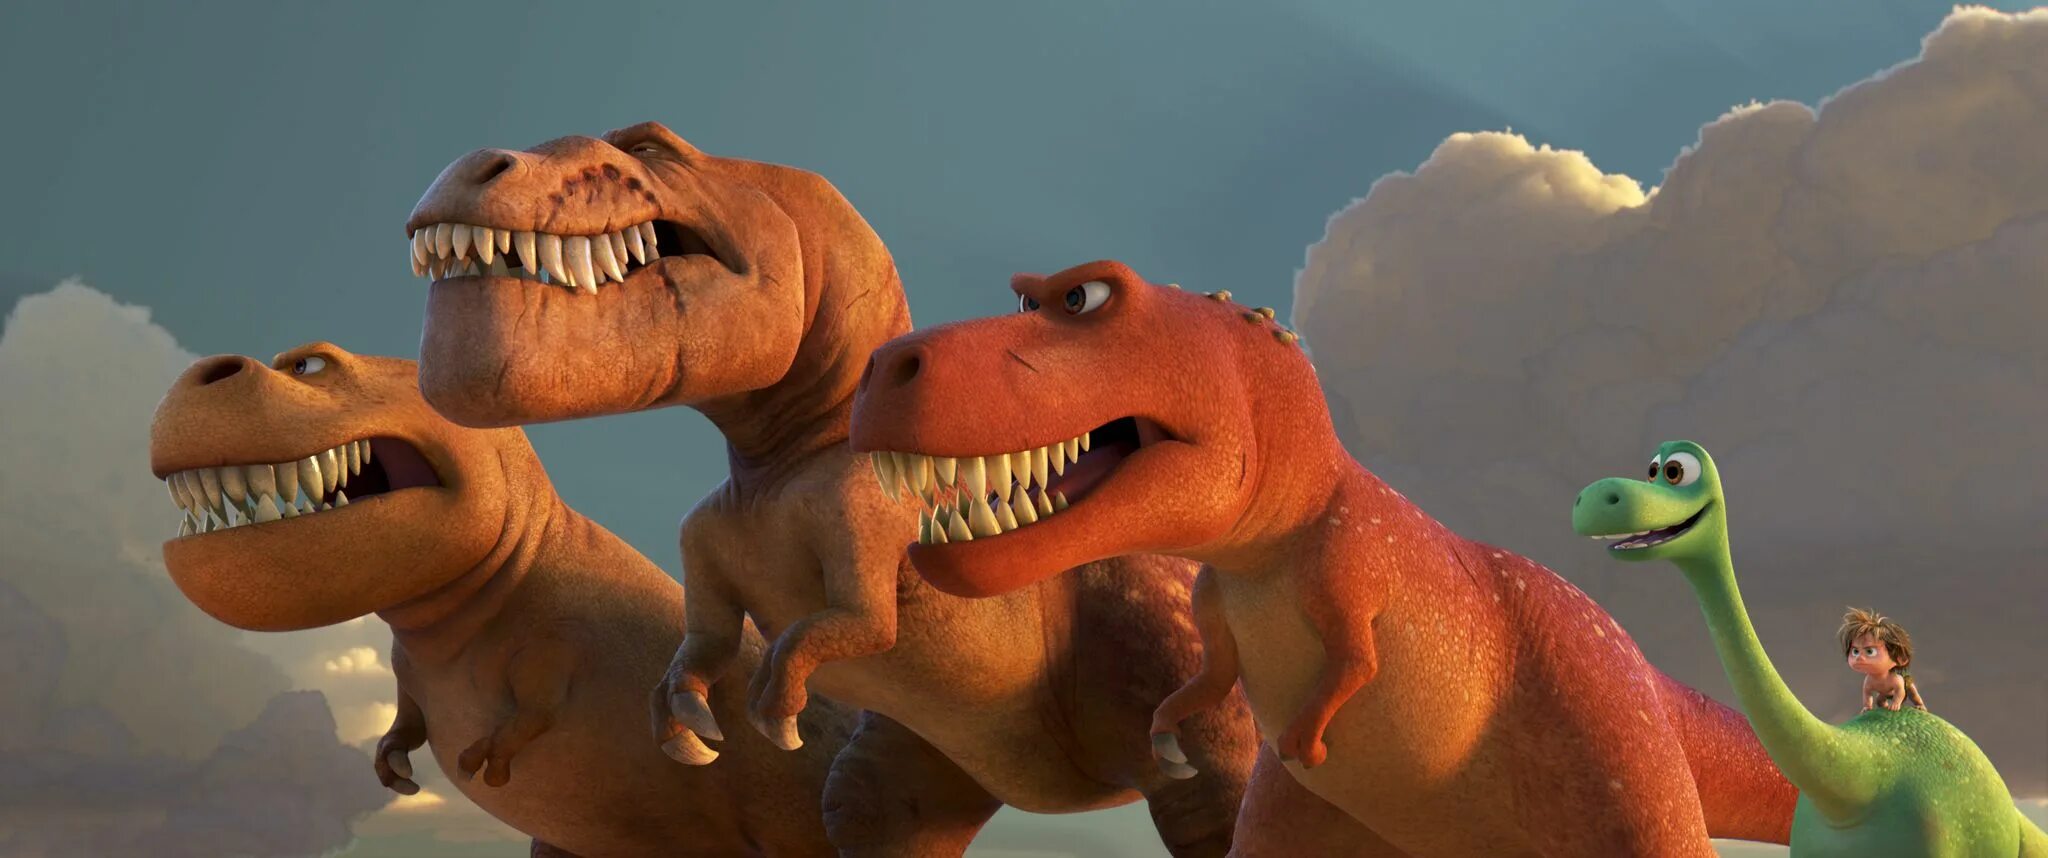 The good Dinosaur (хороший динозавр) (2015). Динозавр Арло Дисней. Хороший динозавр семья Арло. Динозаврами 2015